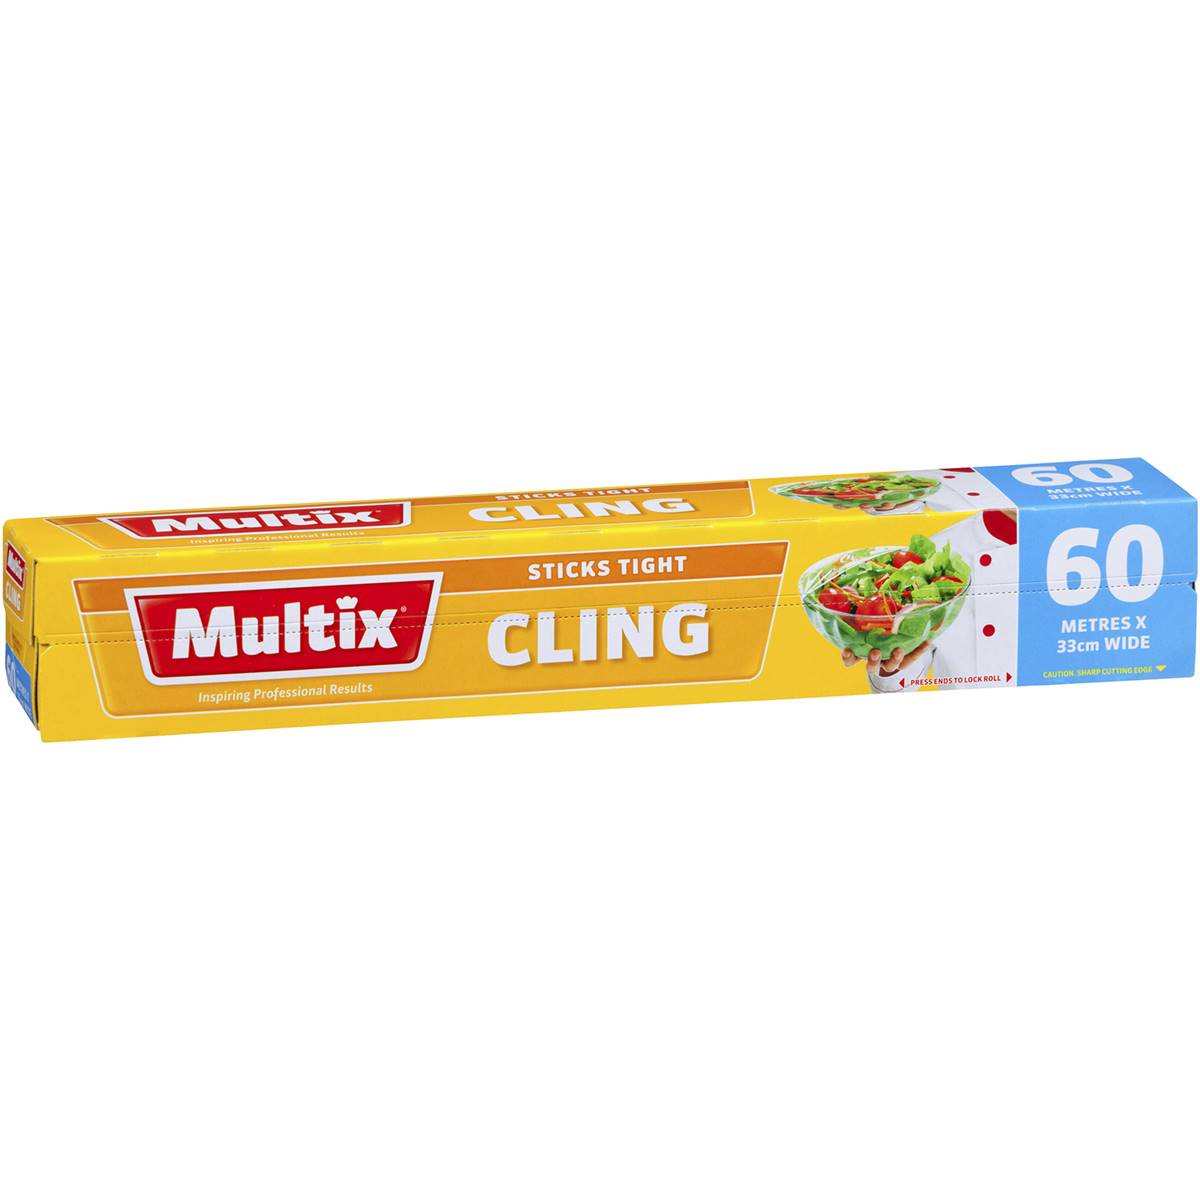 Multix Cling Wrap 33cm x 60m